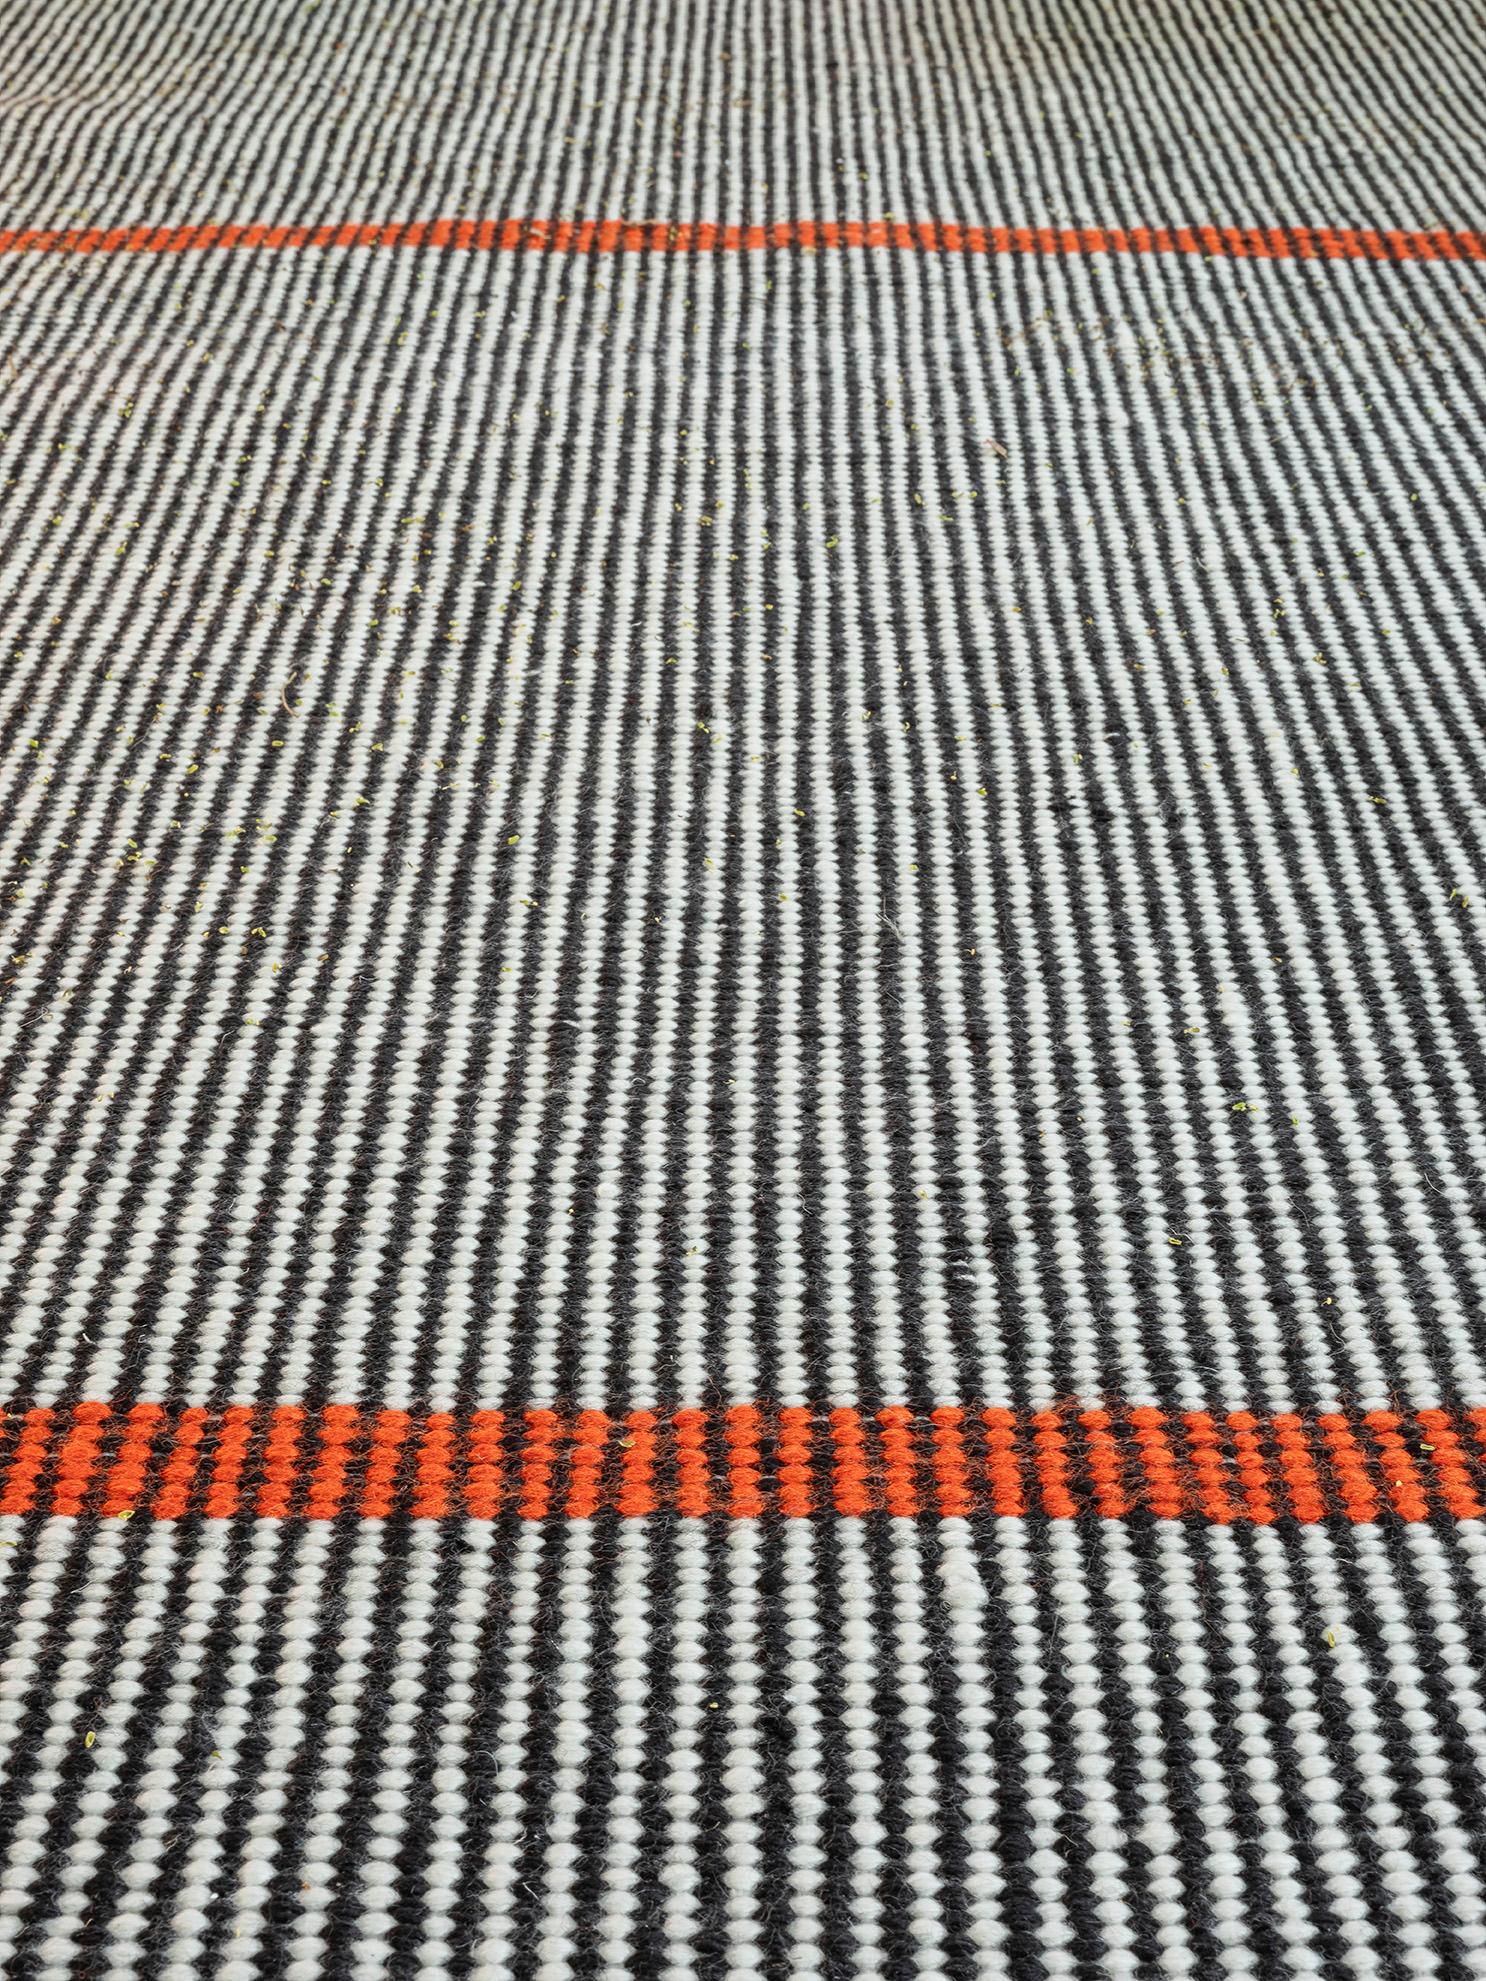 Contemporary Modern Handwoven Polypropylene Outdoor Rug Carpet Black&Orange Touareg For Sale